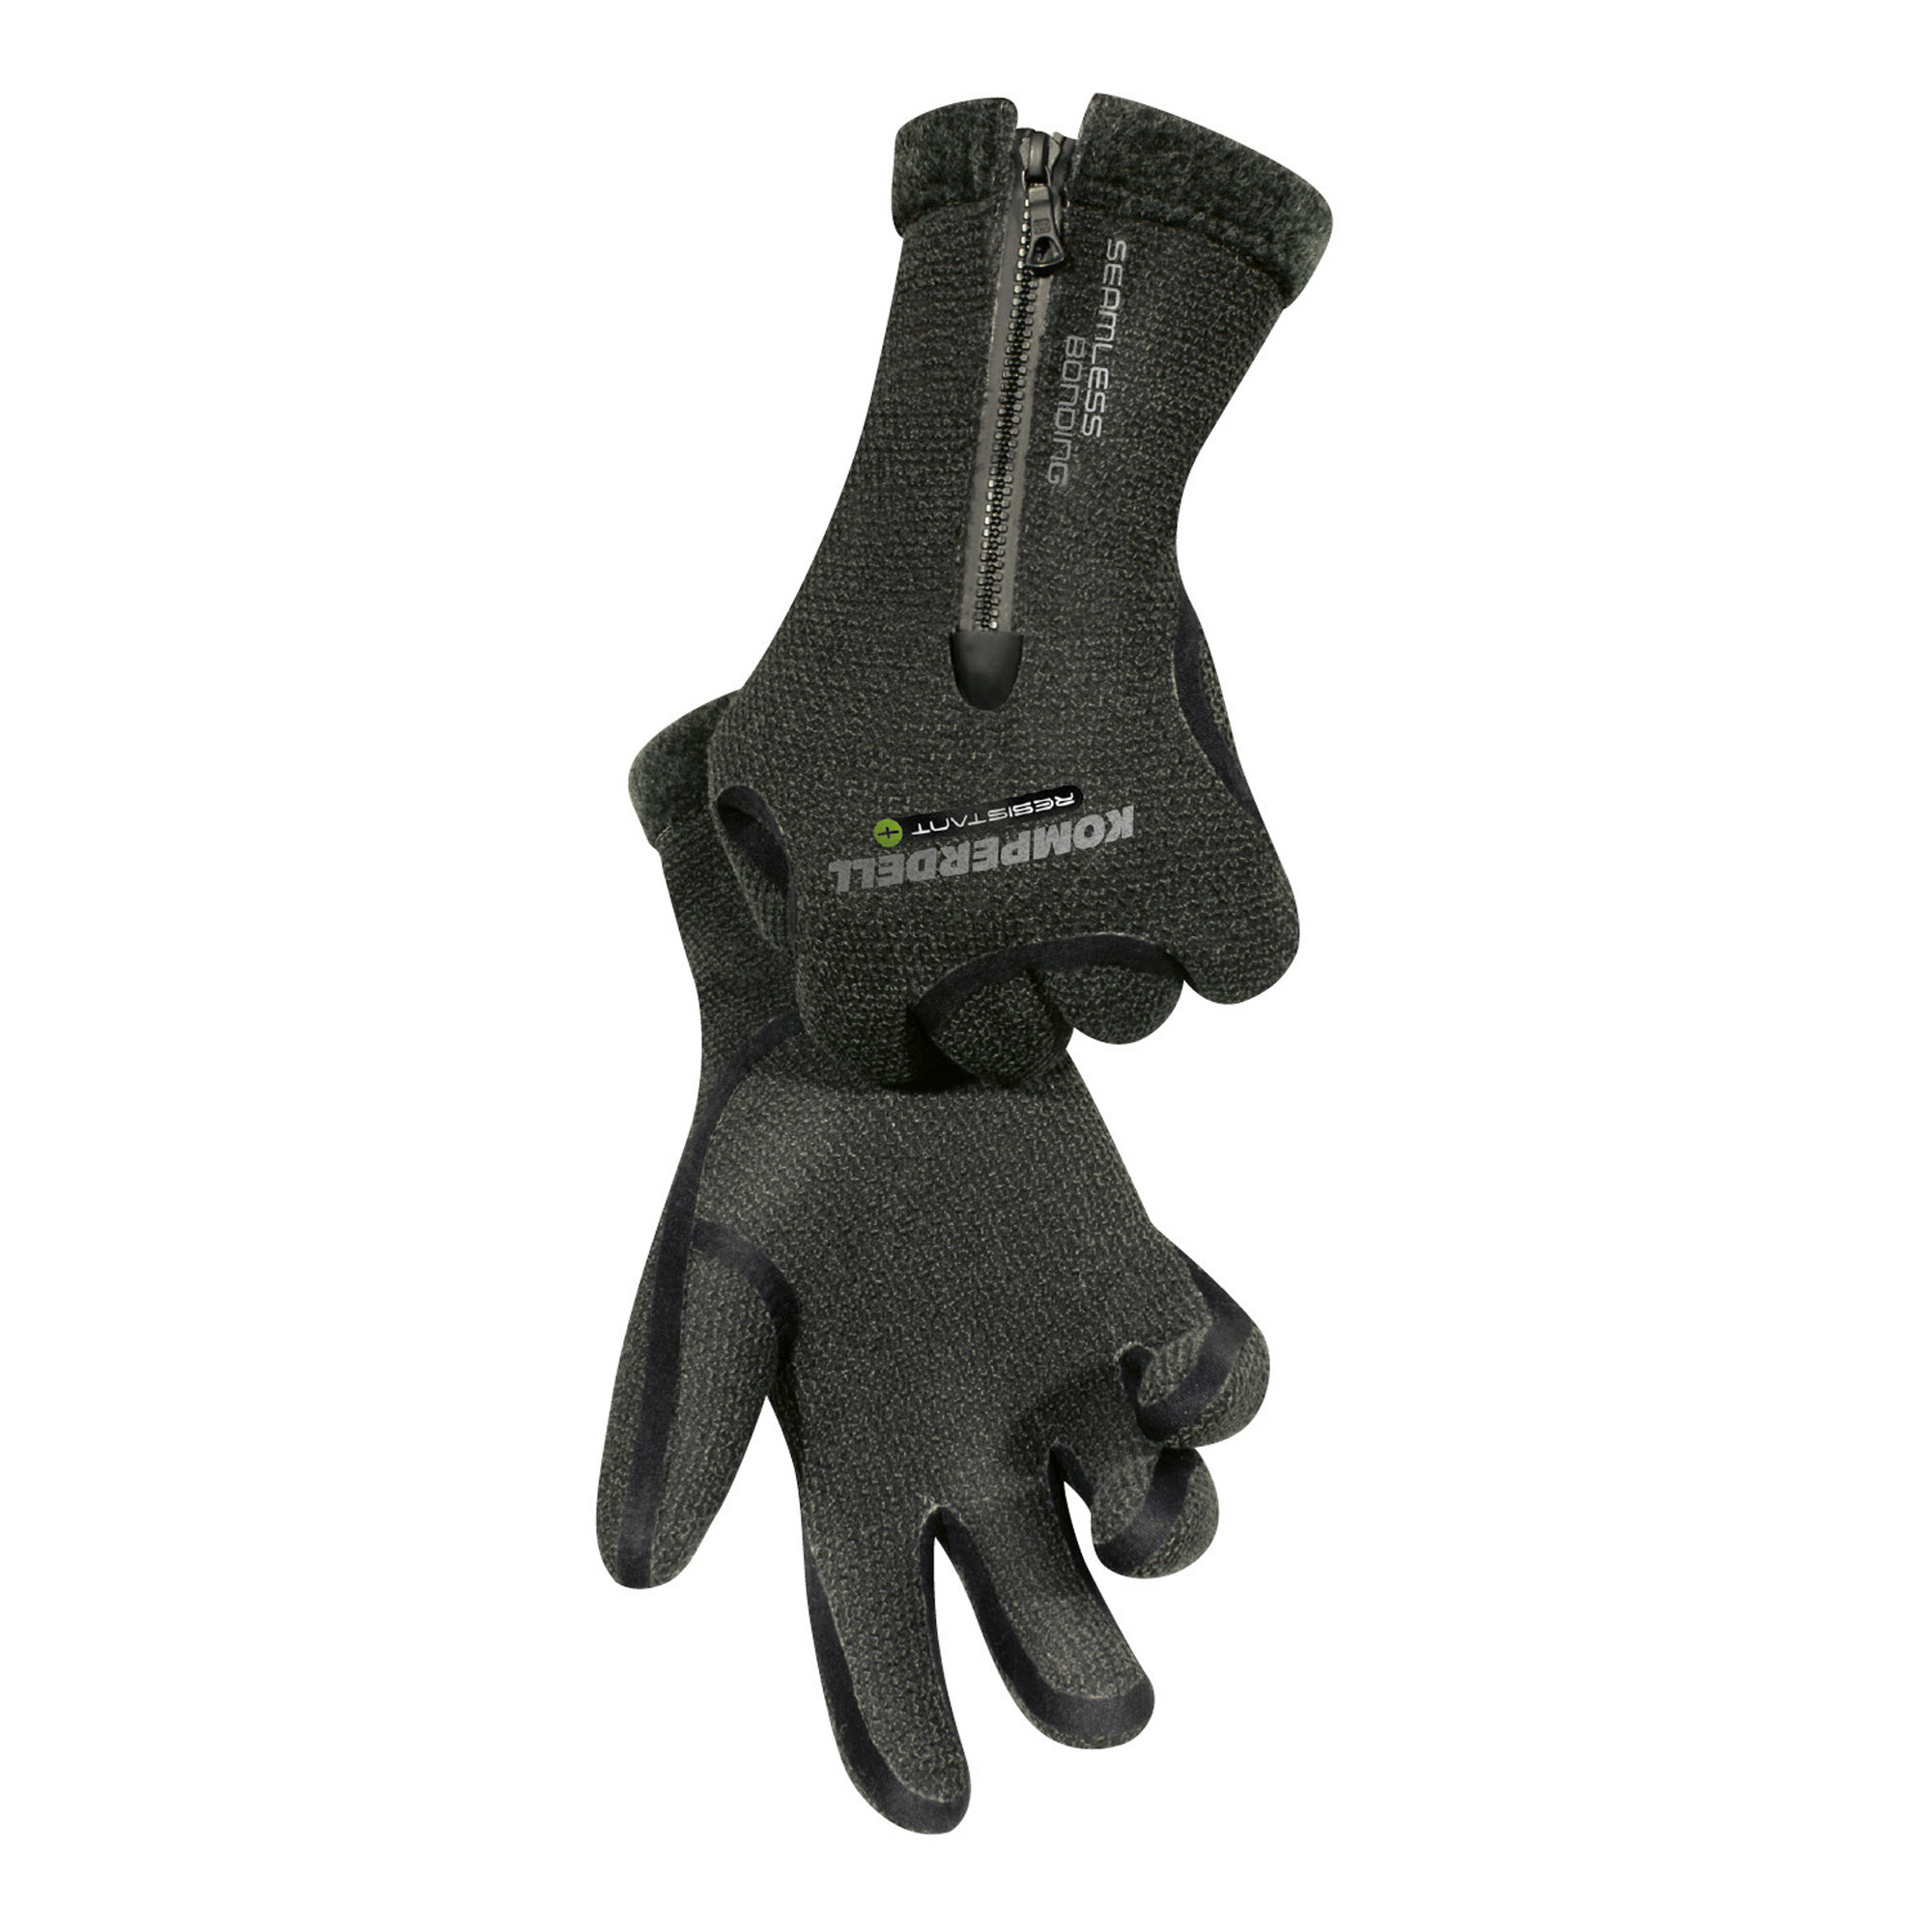 Komperdell Resistant Pro Handschuh